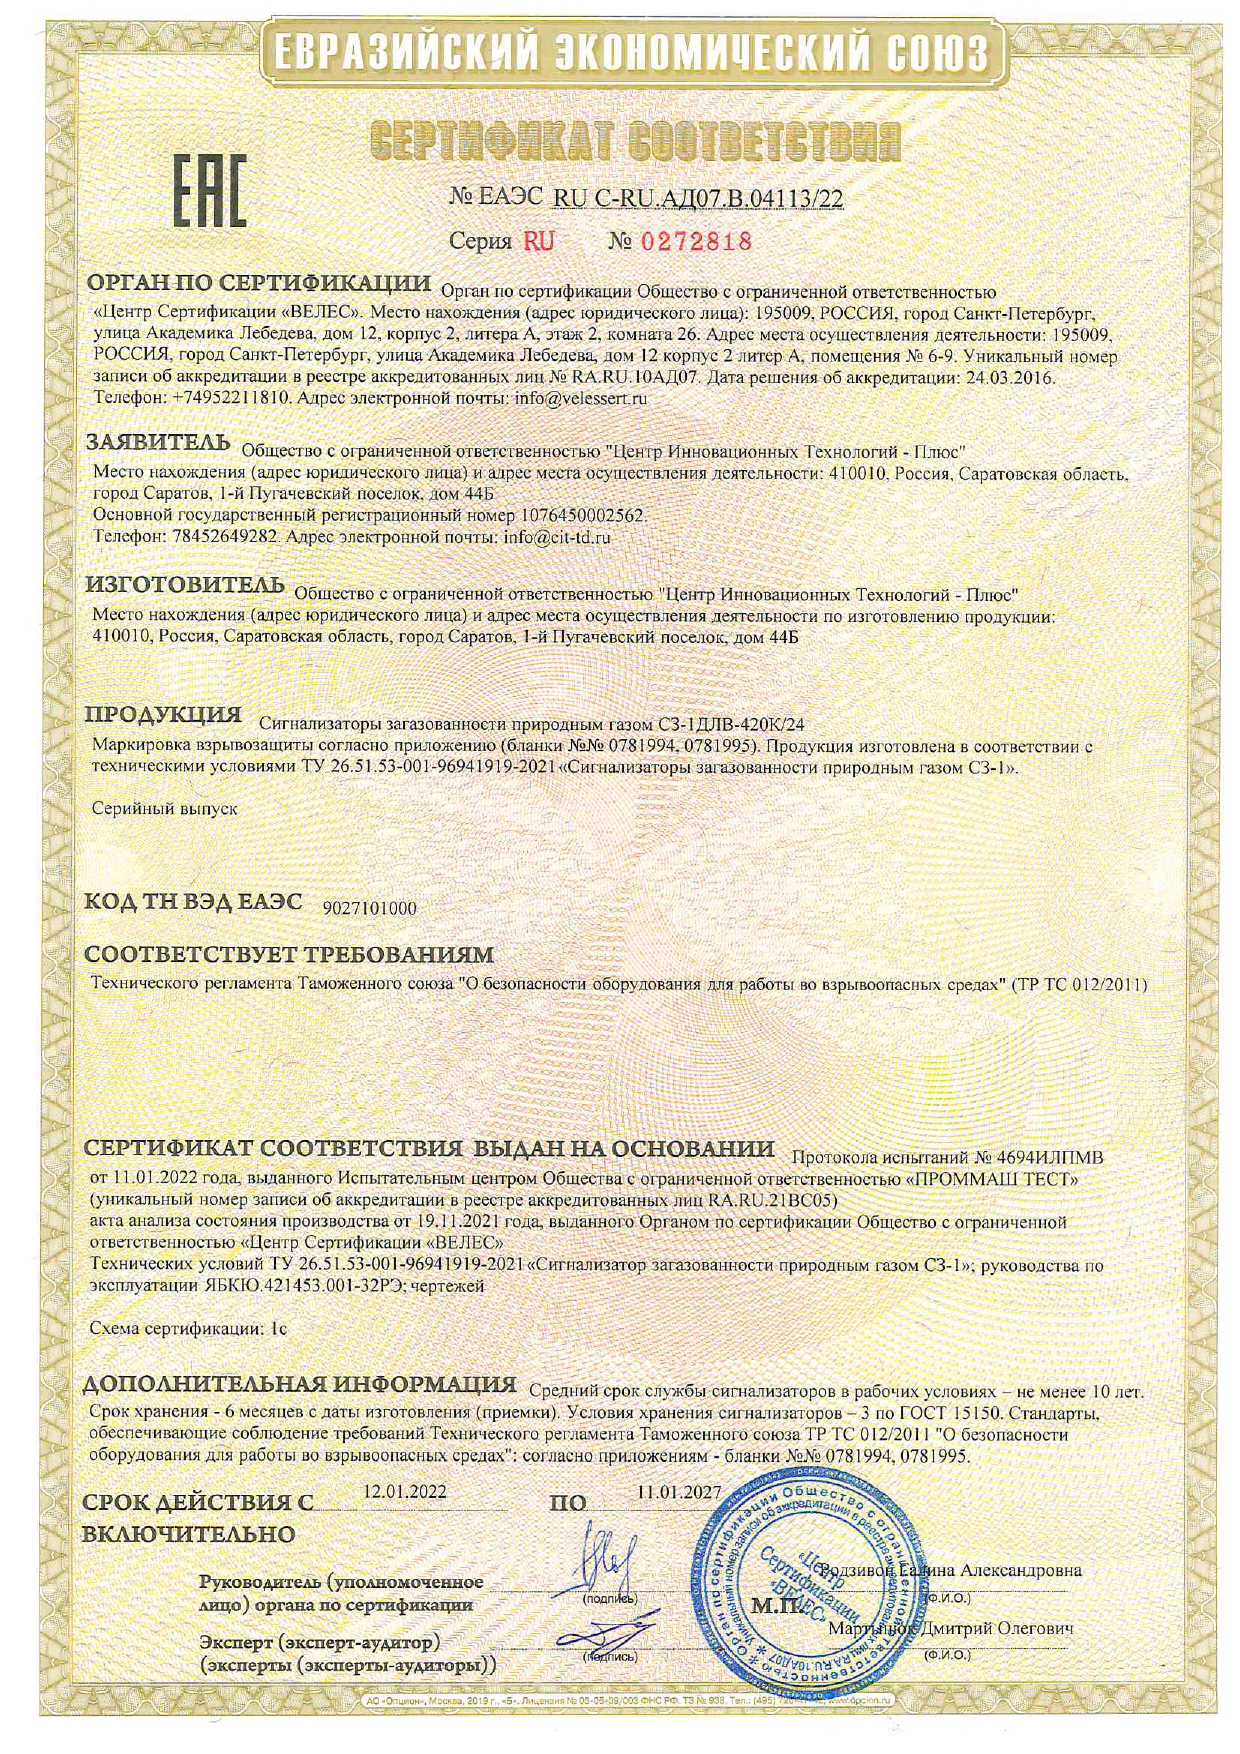 Сертификаты соответствия СЗ-ДЛВ-420К